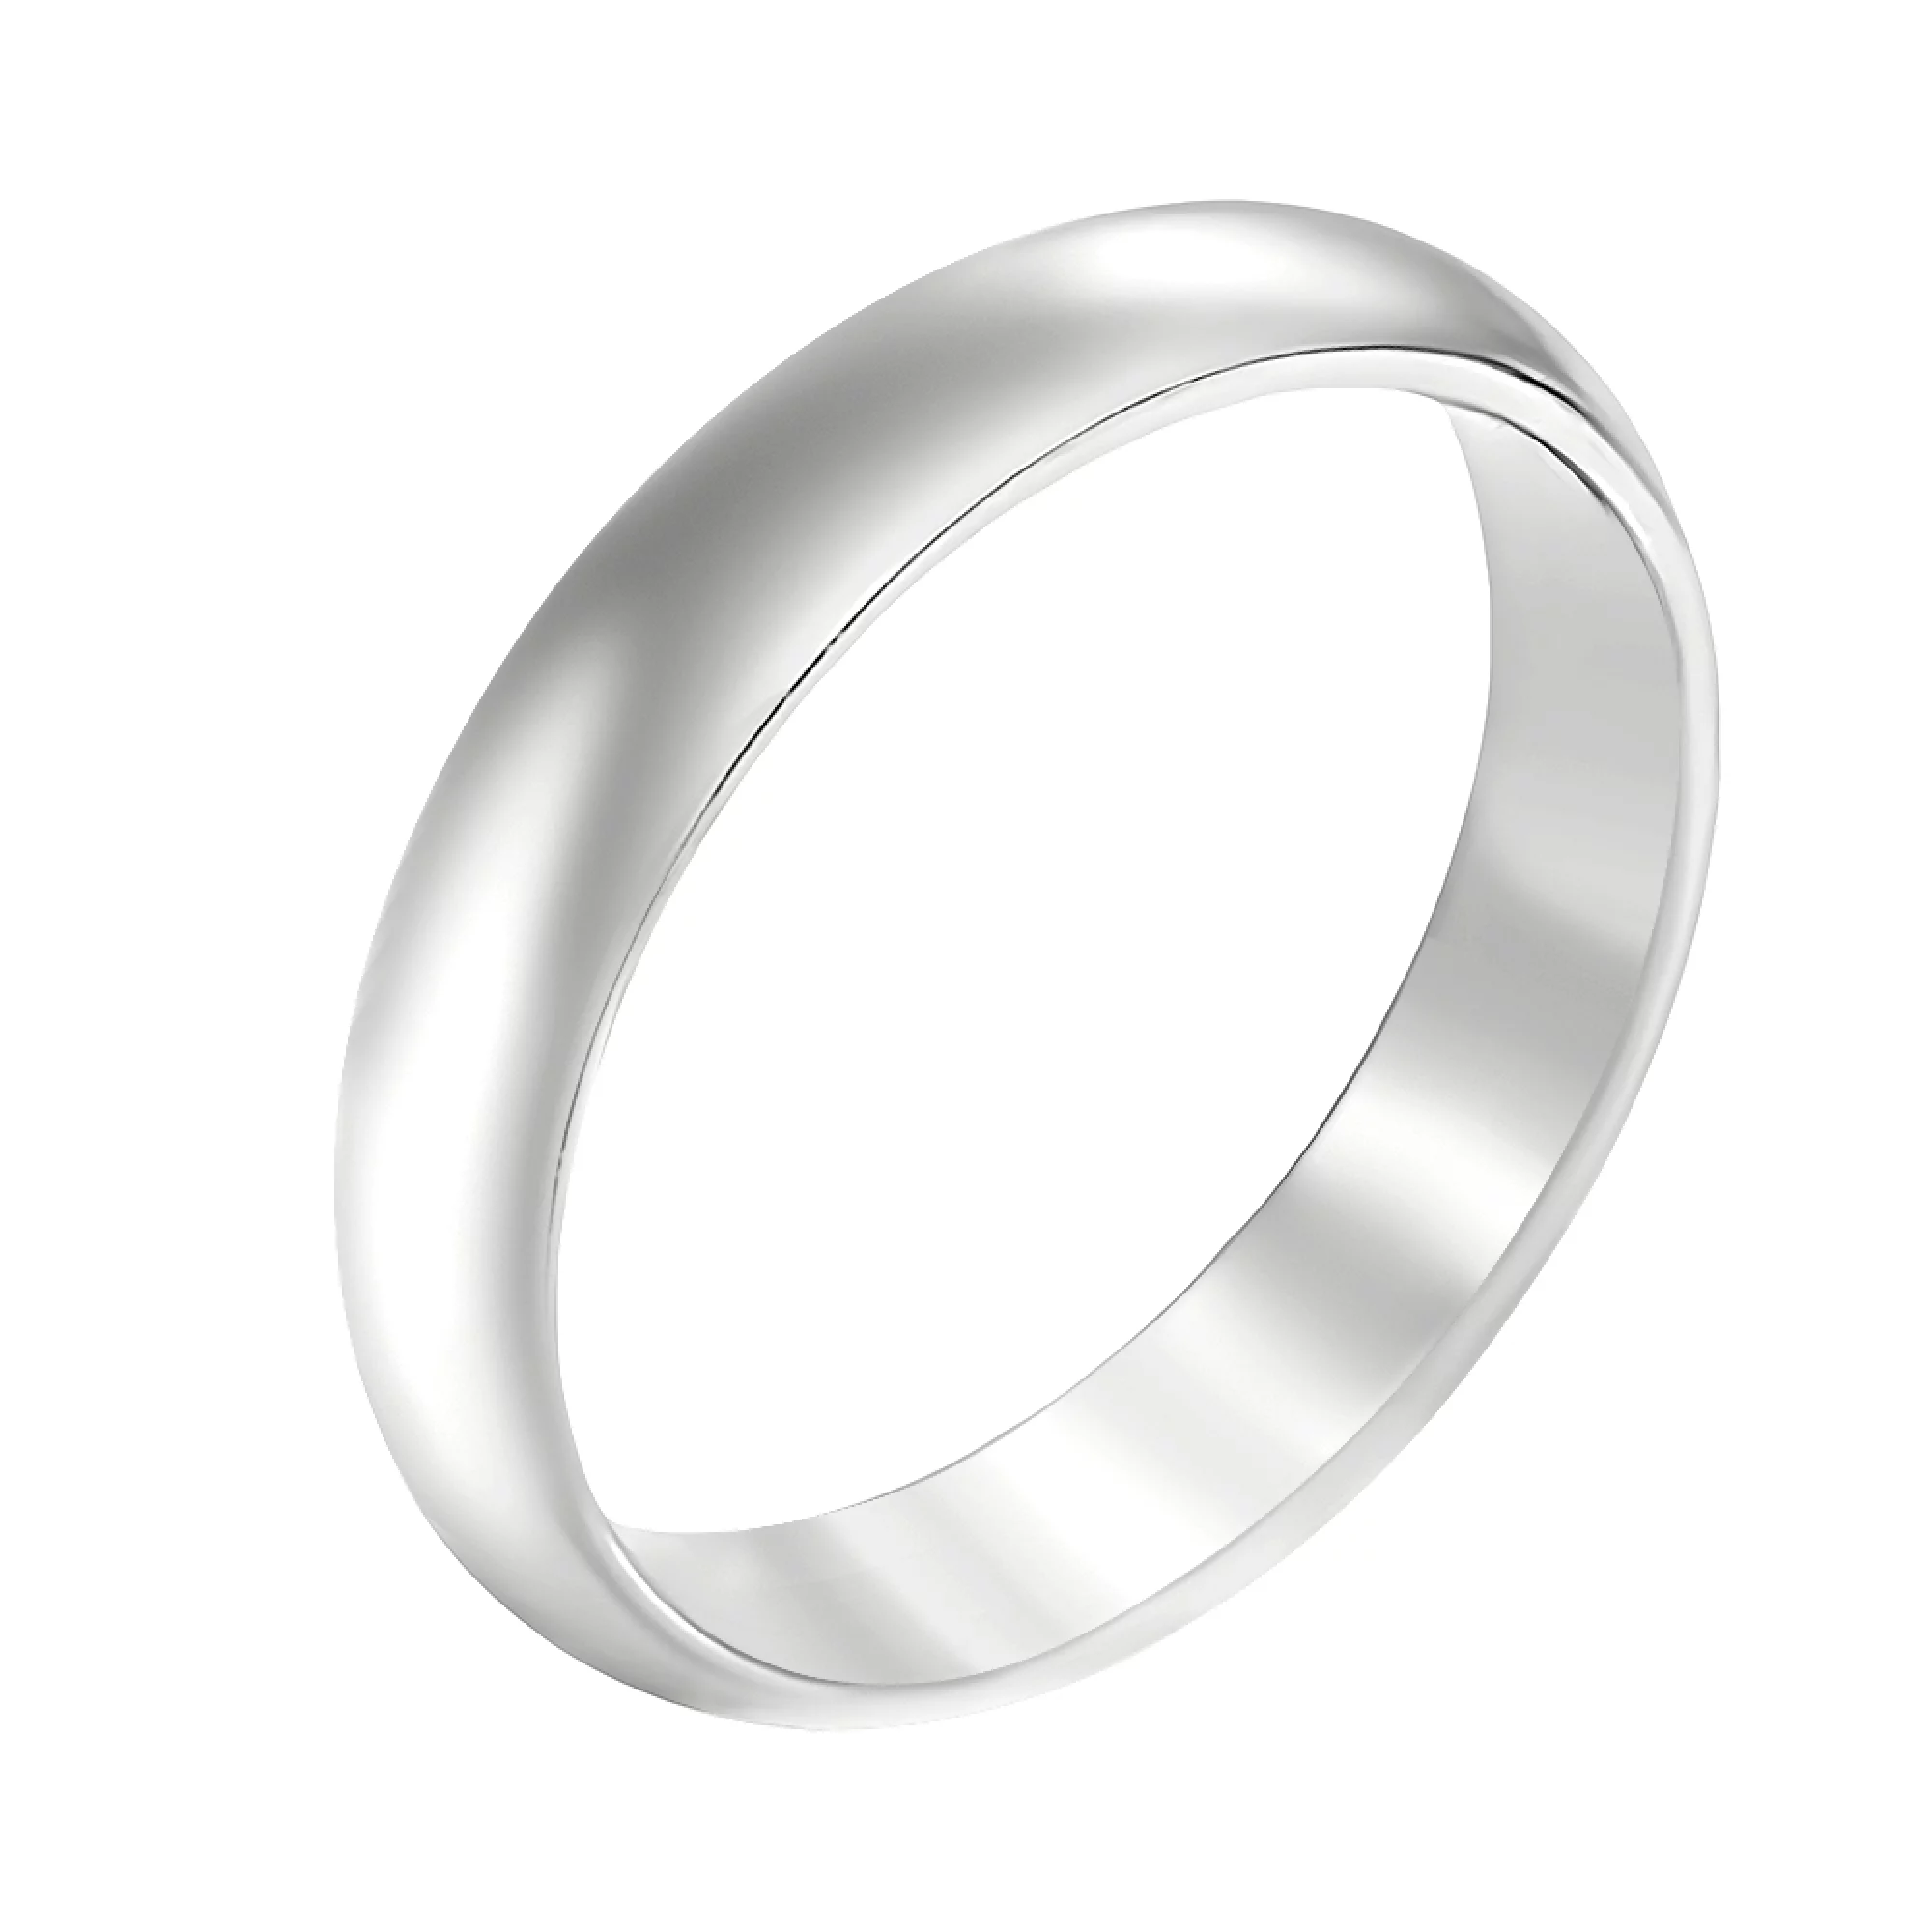 Обручальное кольцо из белого золота серии комфорт в классическом стиле - 778145 – изображение 1